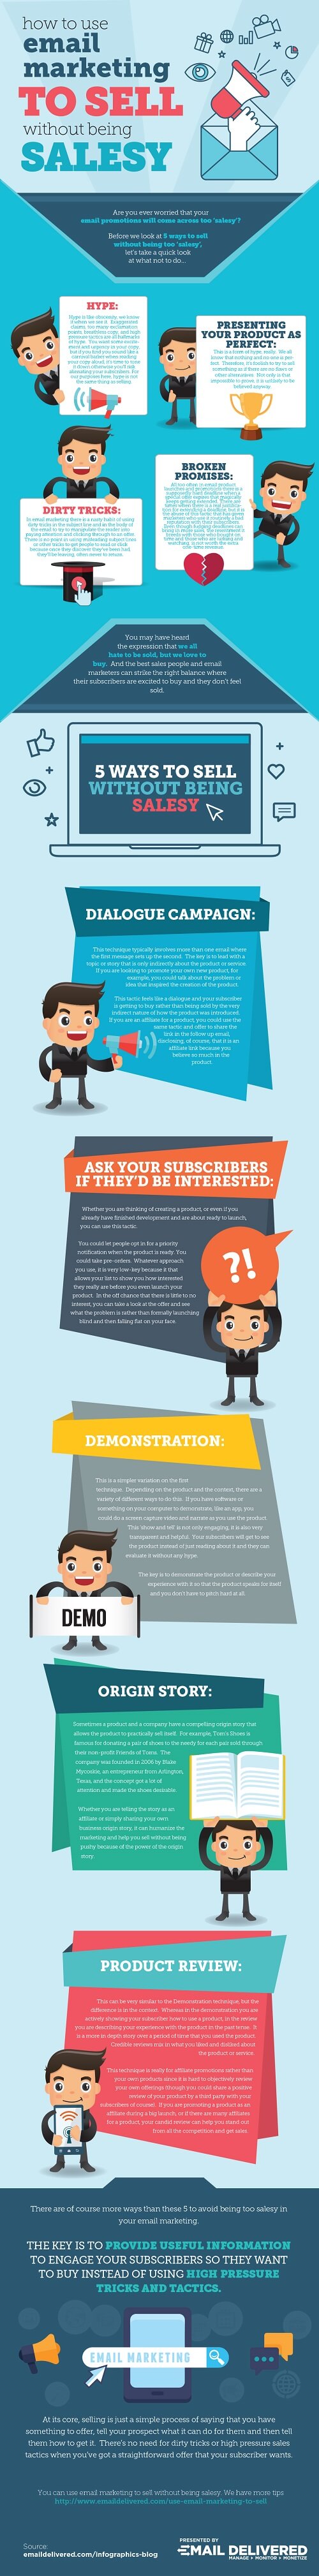 estrategias discretas para vender con e-mail marketing #infografia